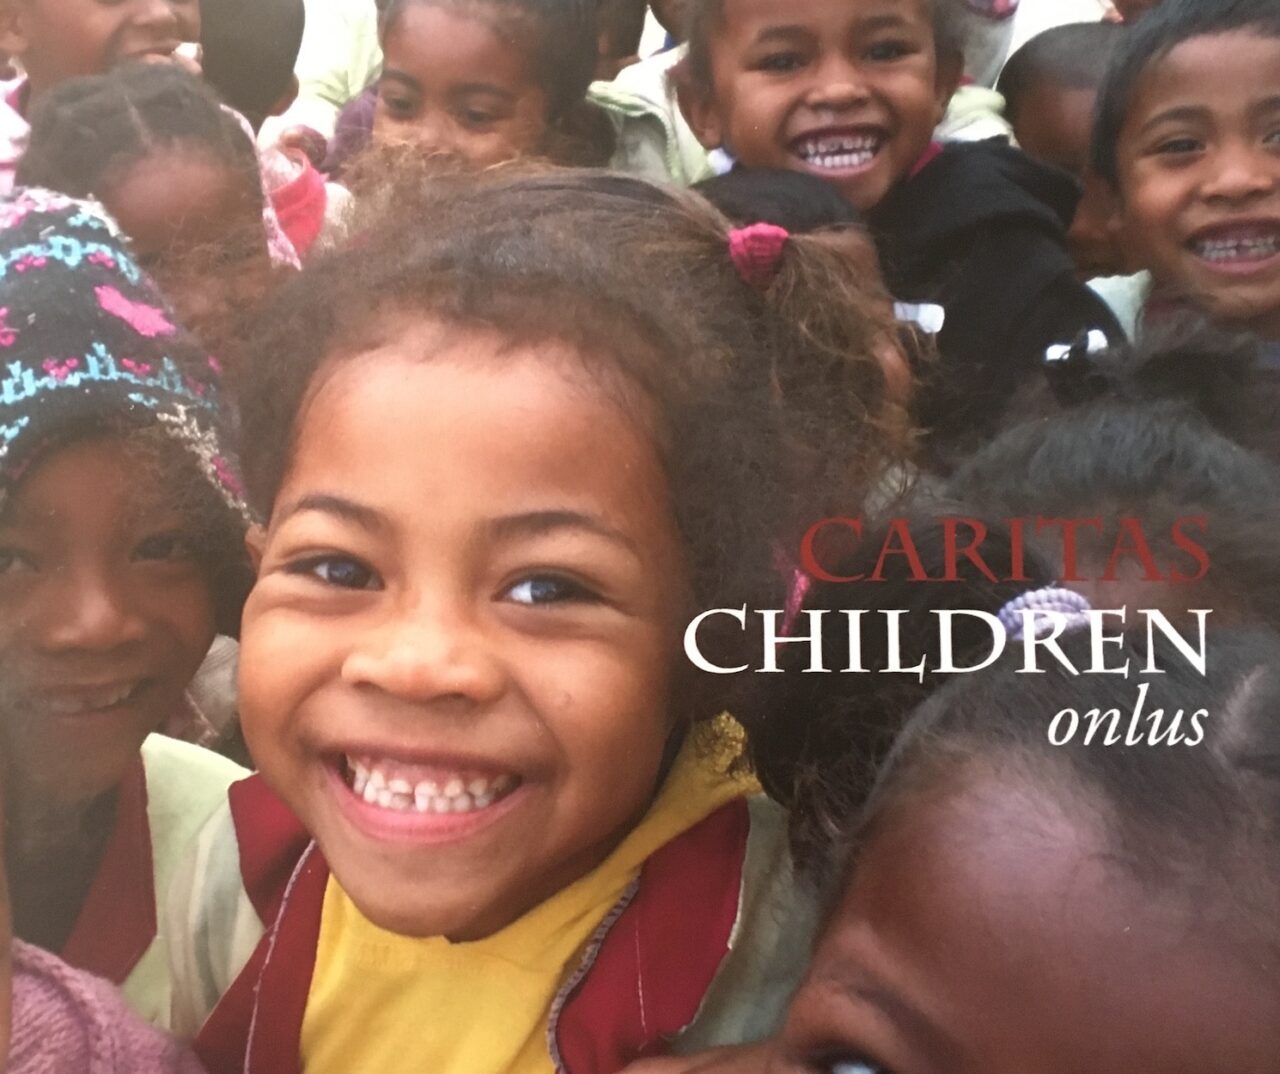 https://www.matteodaffada.it/wp-content/uploads/2022/06/Caritas-children-report-1280x1074.jpg